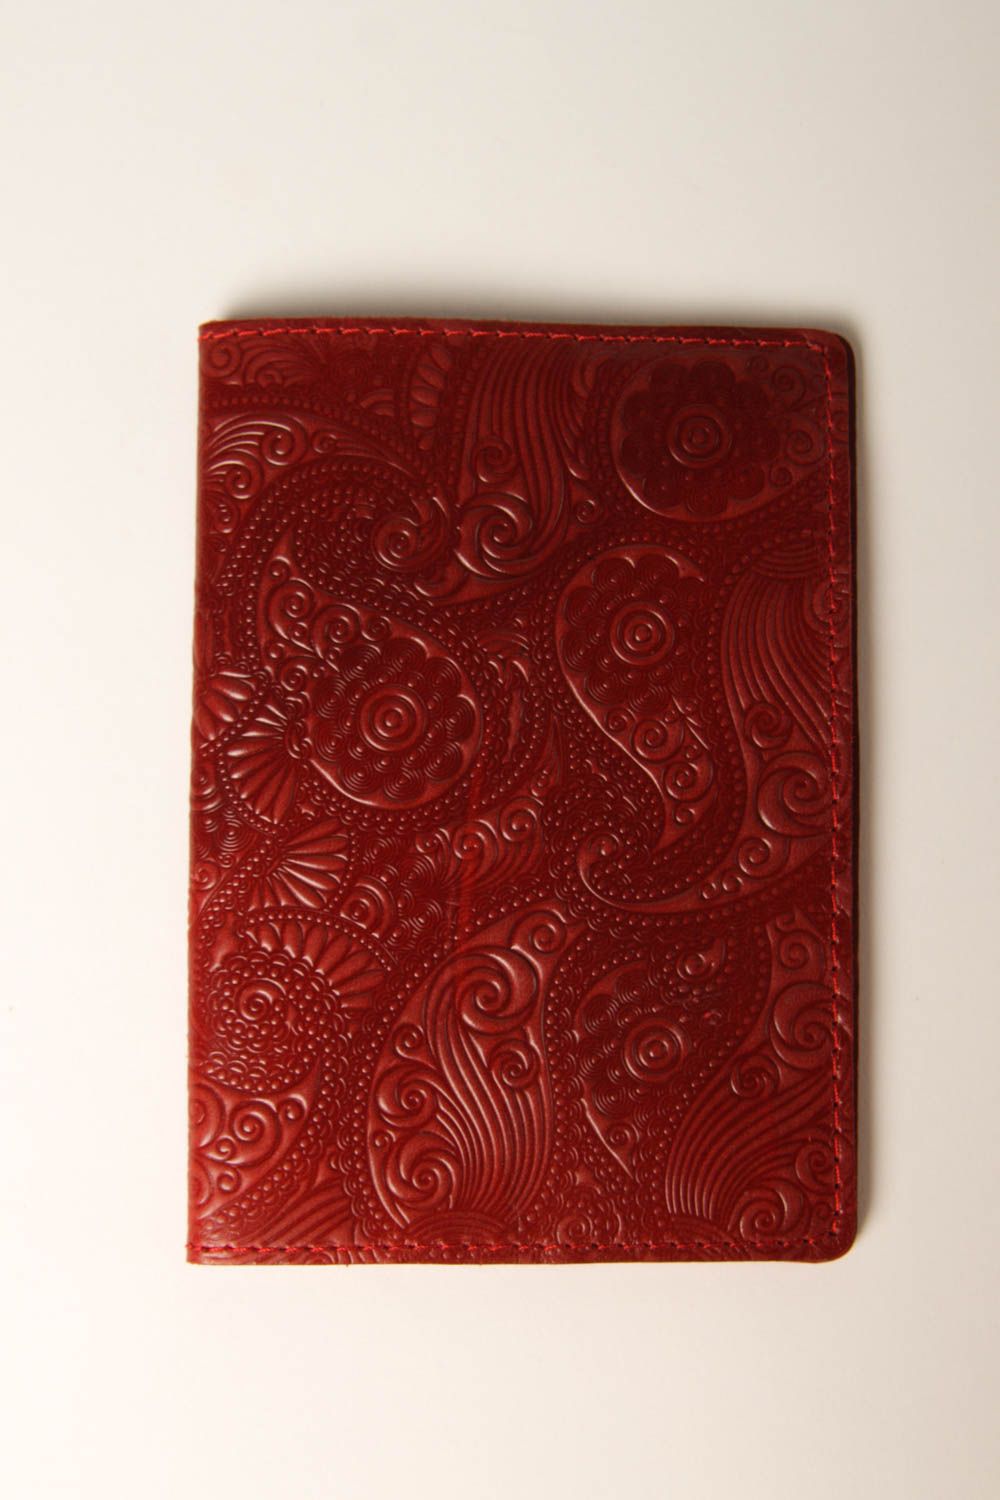 Оригинальный подарок хенд мейд аксессуар из кожи красная обложка на паспорт фото 3